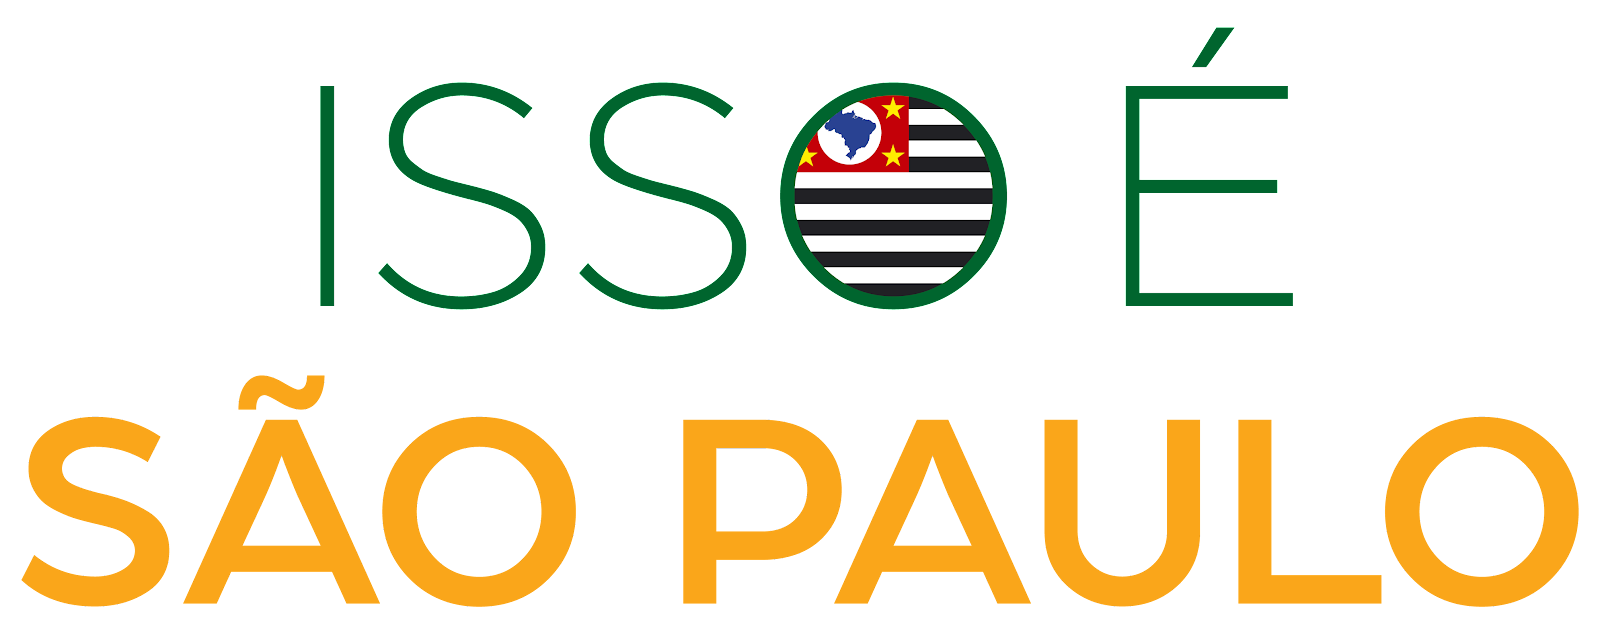 ISSO É SÃO PAULO